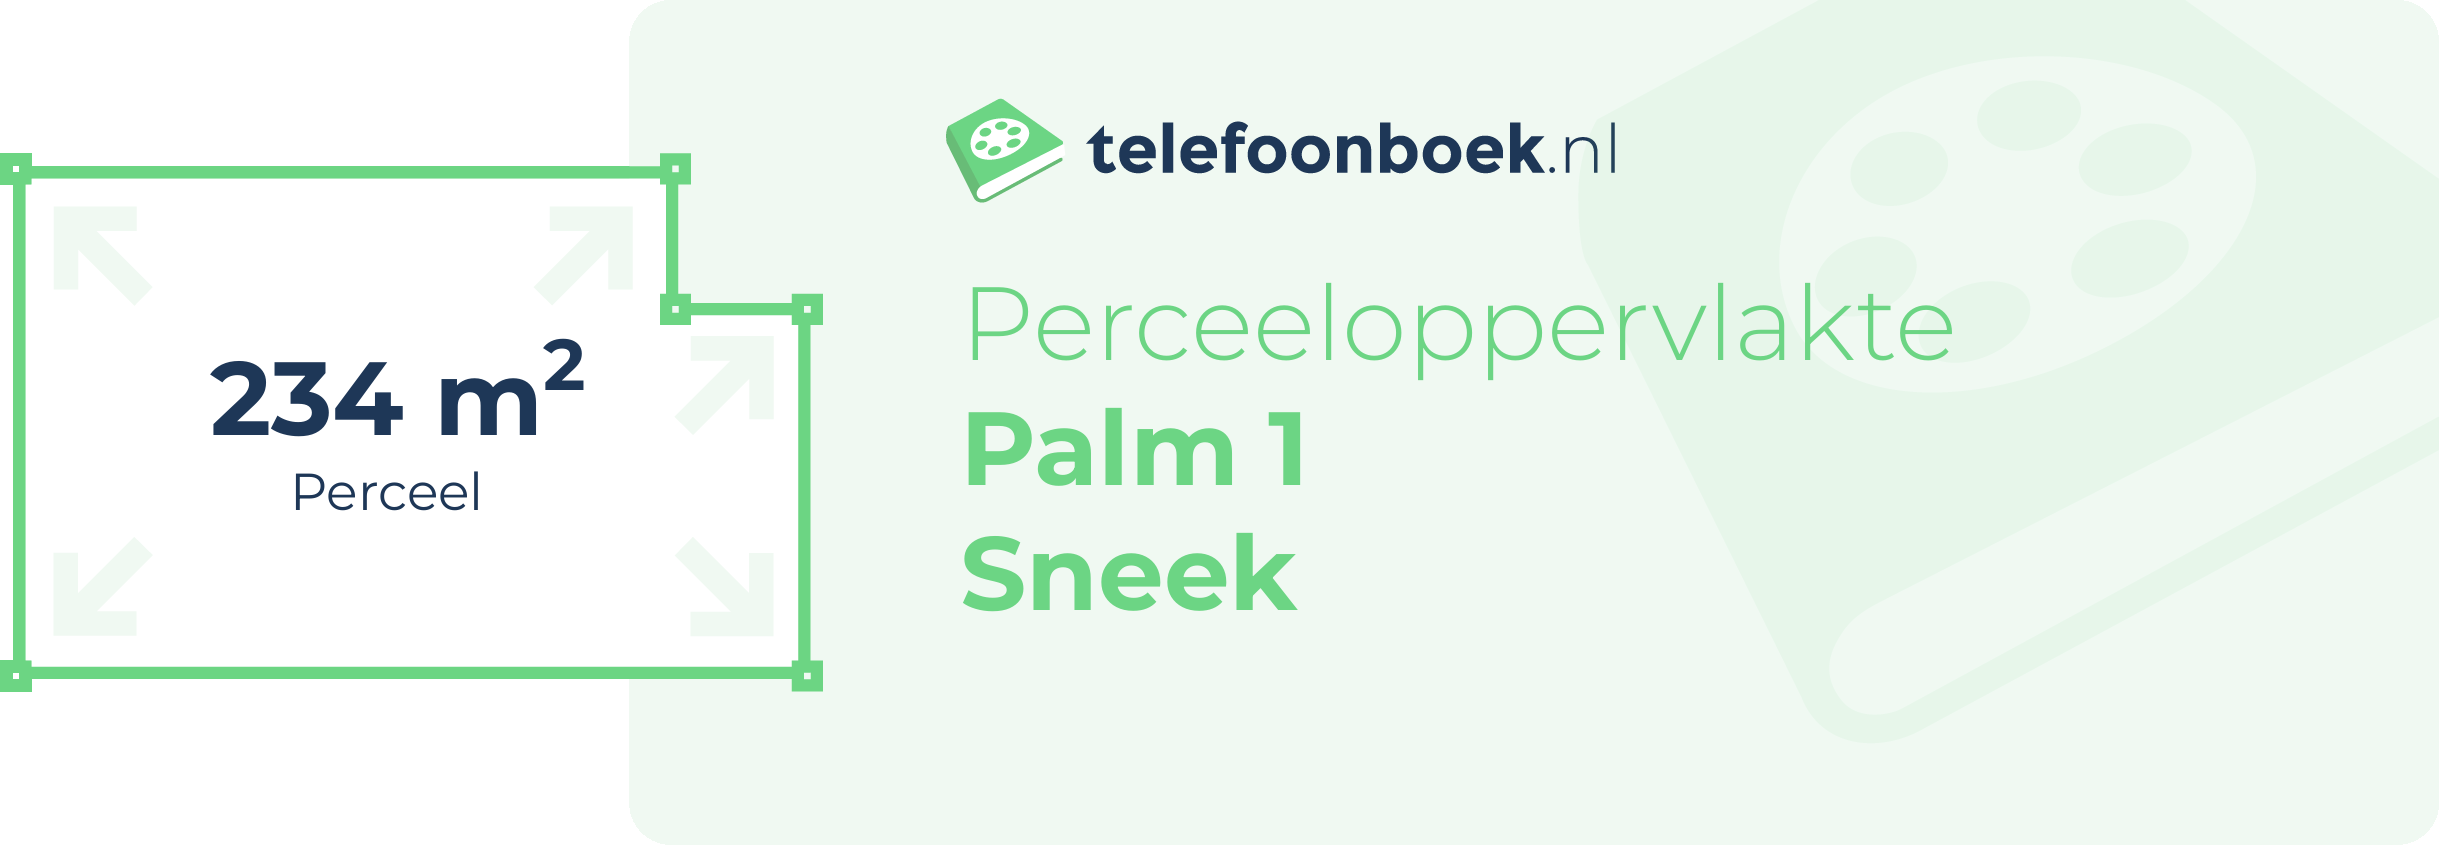 Perceeloppervlakte Palm 1 Sneek